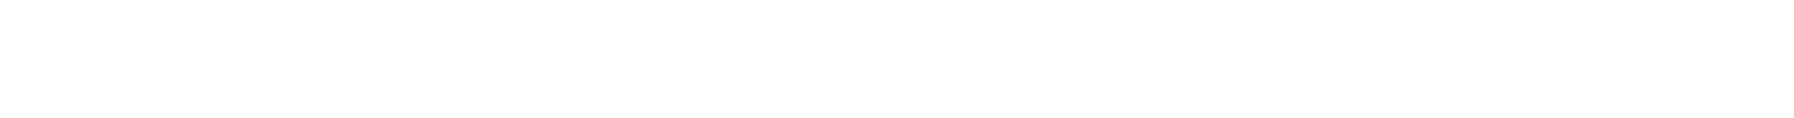 Simba Dickie Group Logo